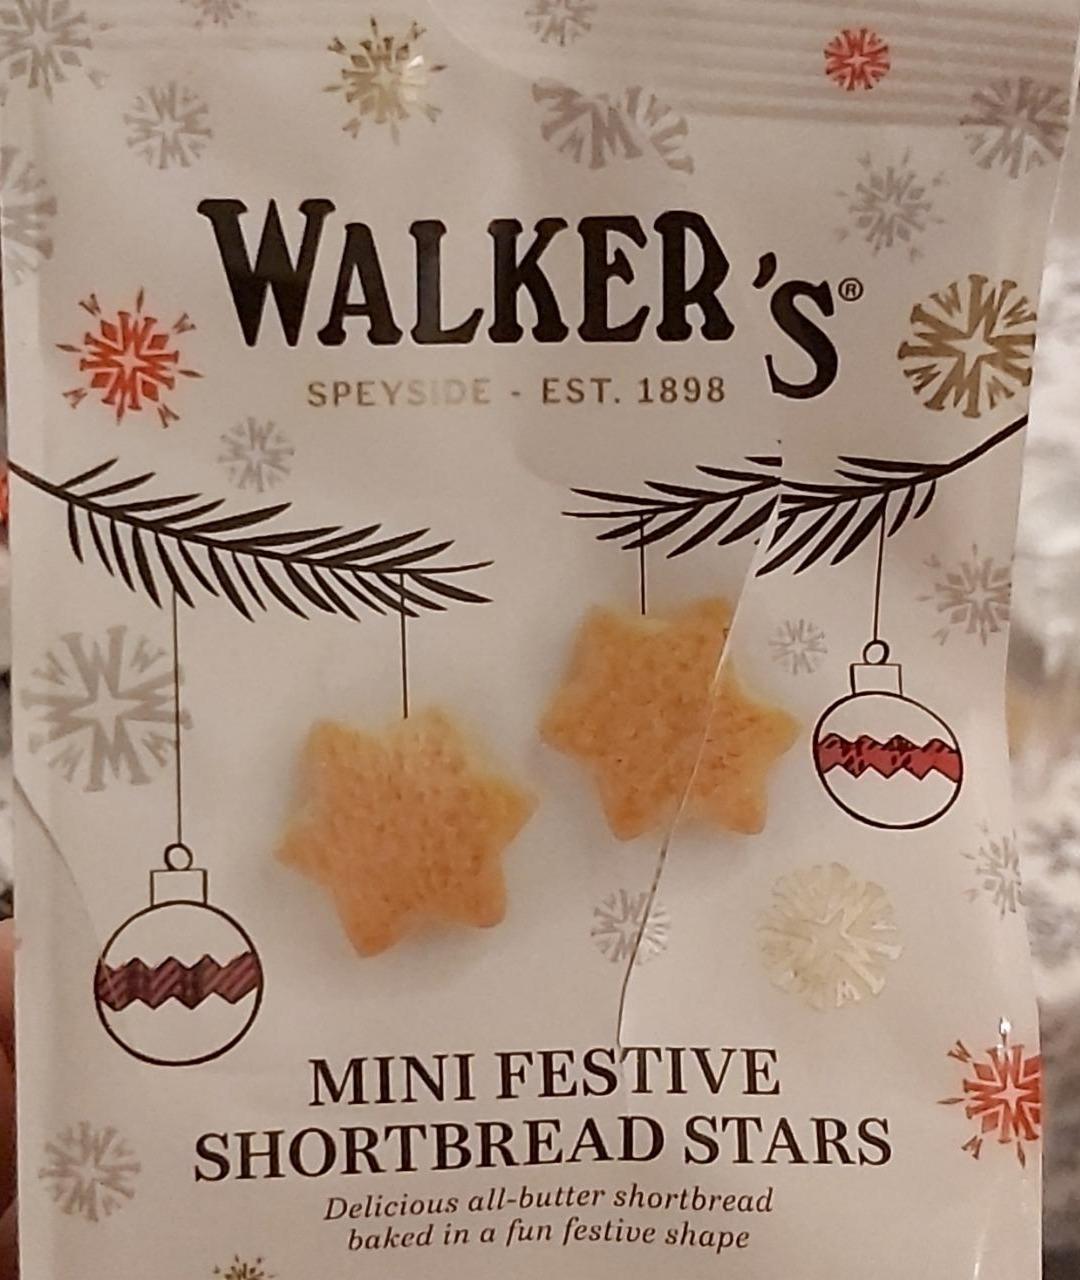 Fotografie - Mini festive shortbread stars Walkers